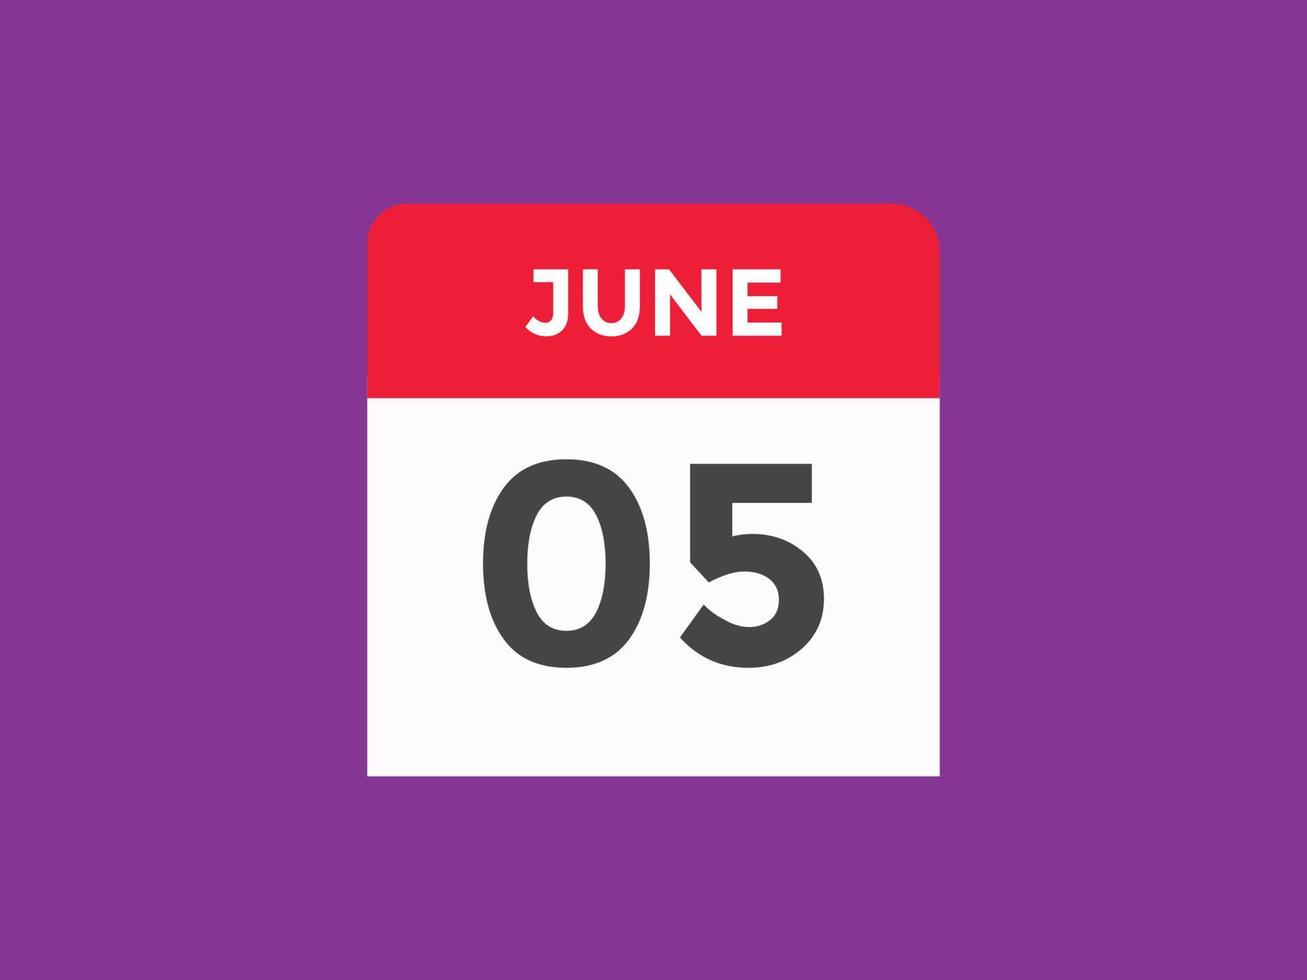 Recordatorio del calendario del 5 de junio. Plantilla de icono de calendario diario del 5 de junio. plantilla de diseño de icono de calendario 5 de junio. ilustración vectorial vector